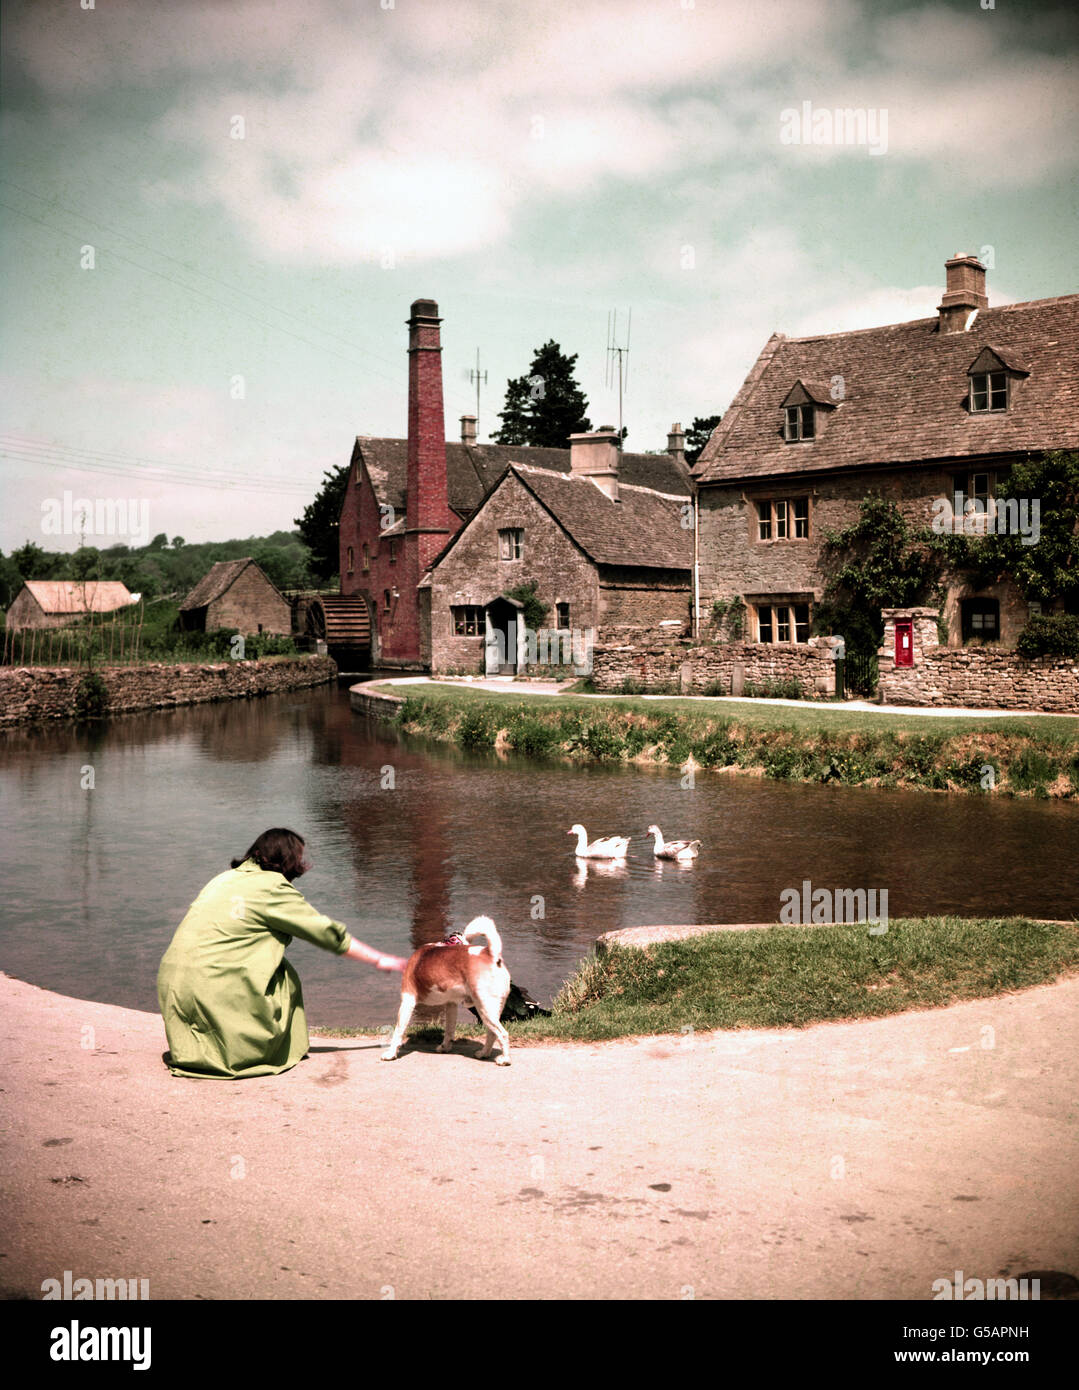 MACELLAZIONE INFERIORE 1959: La vecchia Mill House e mulino ruscello al villaggio Gloucestershire di macellazione inferiore. Foto Stock